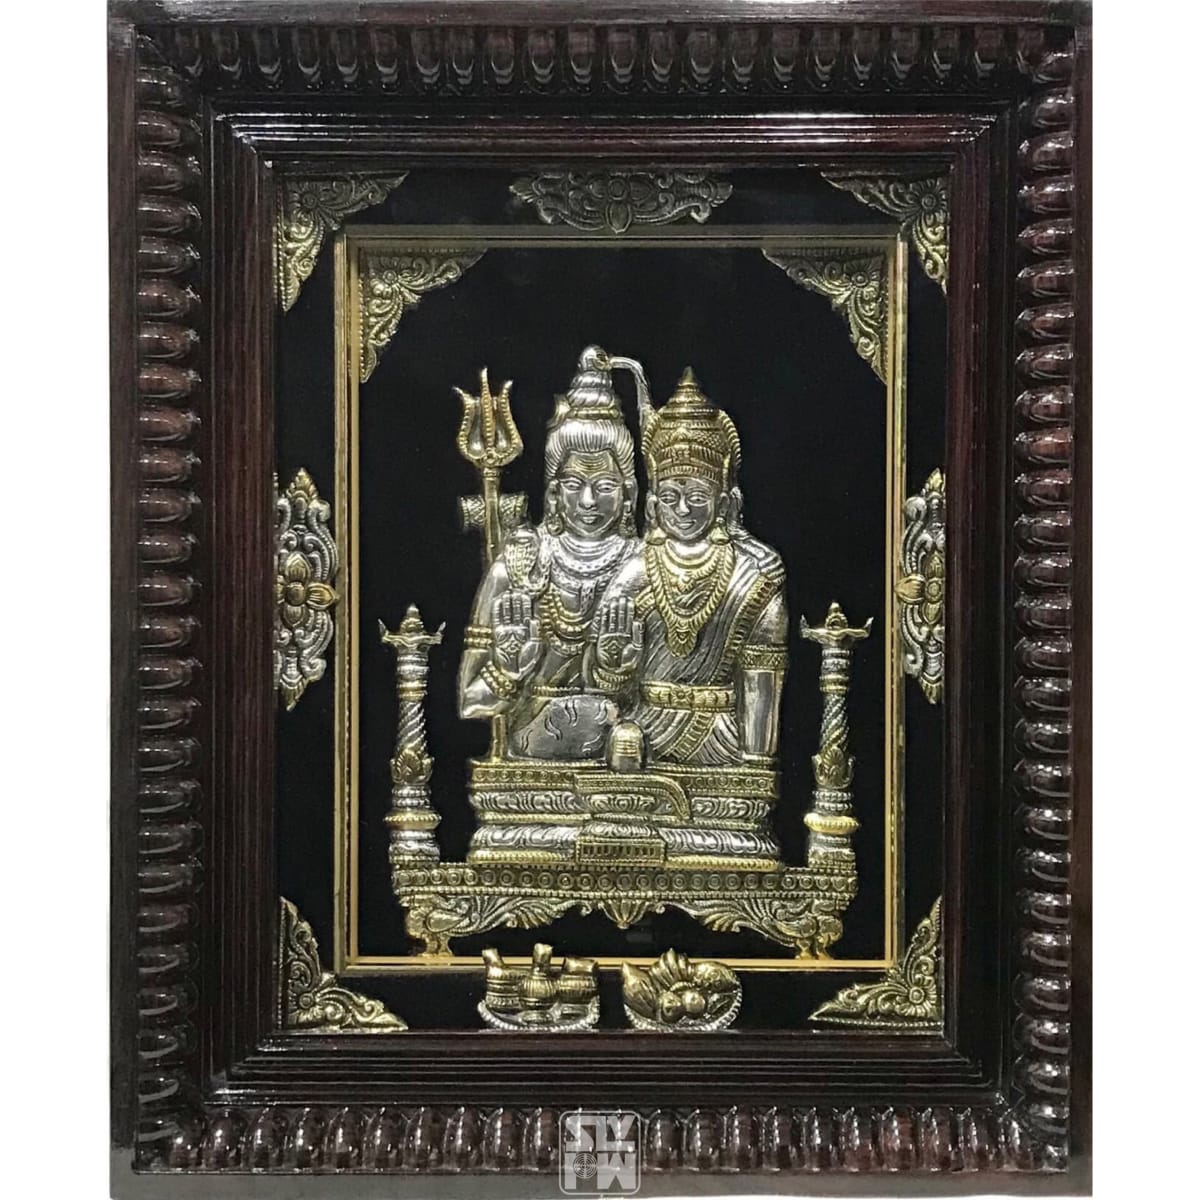 Buy 12x14 Eshwara Parvati Antique Finish Online | Photo Galleria ...